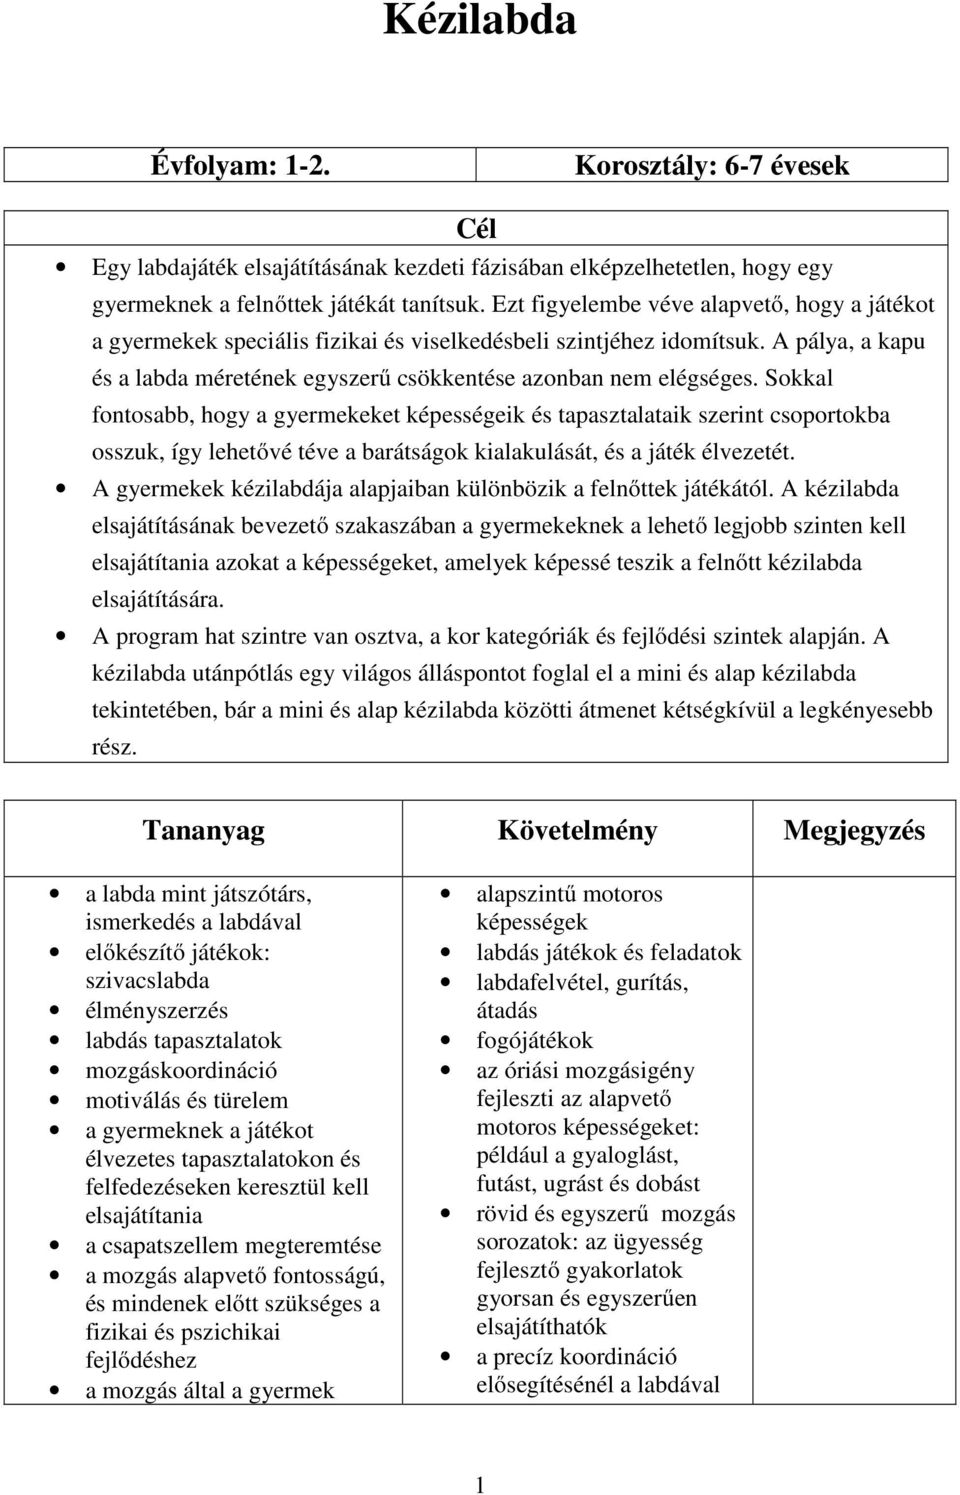 Kézilabda. Cél. Tananyag Követelmény Megjegyzés - PDF Ingyenes letöltés